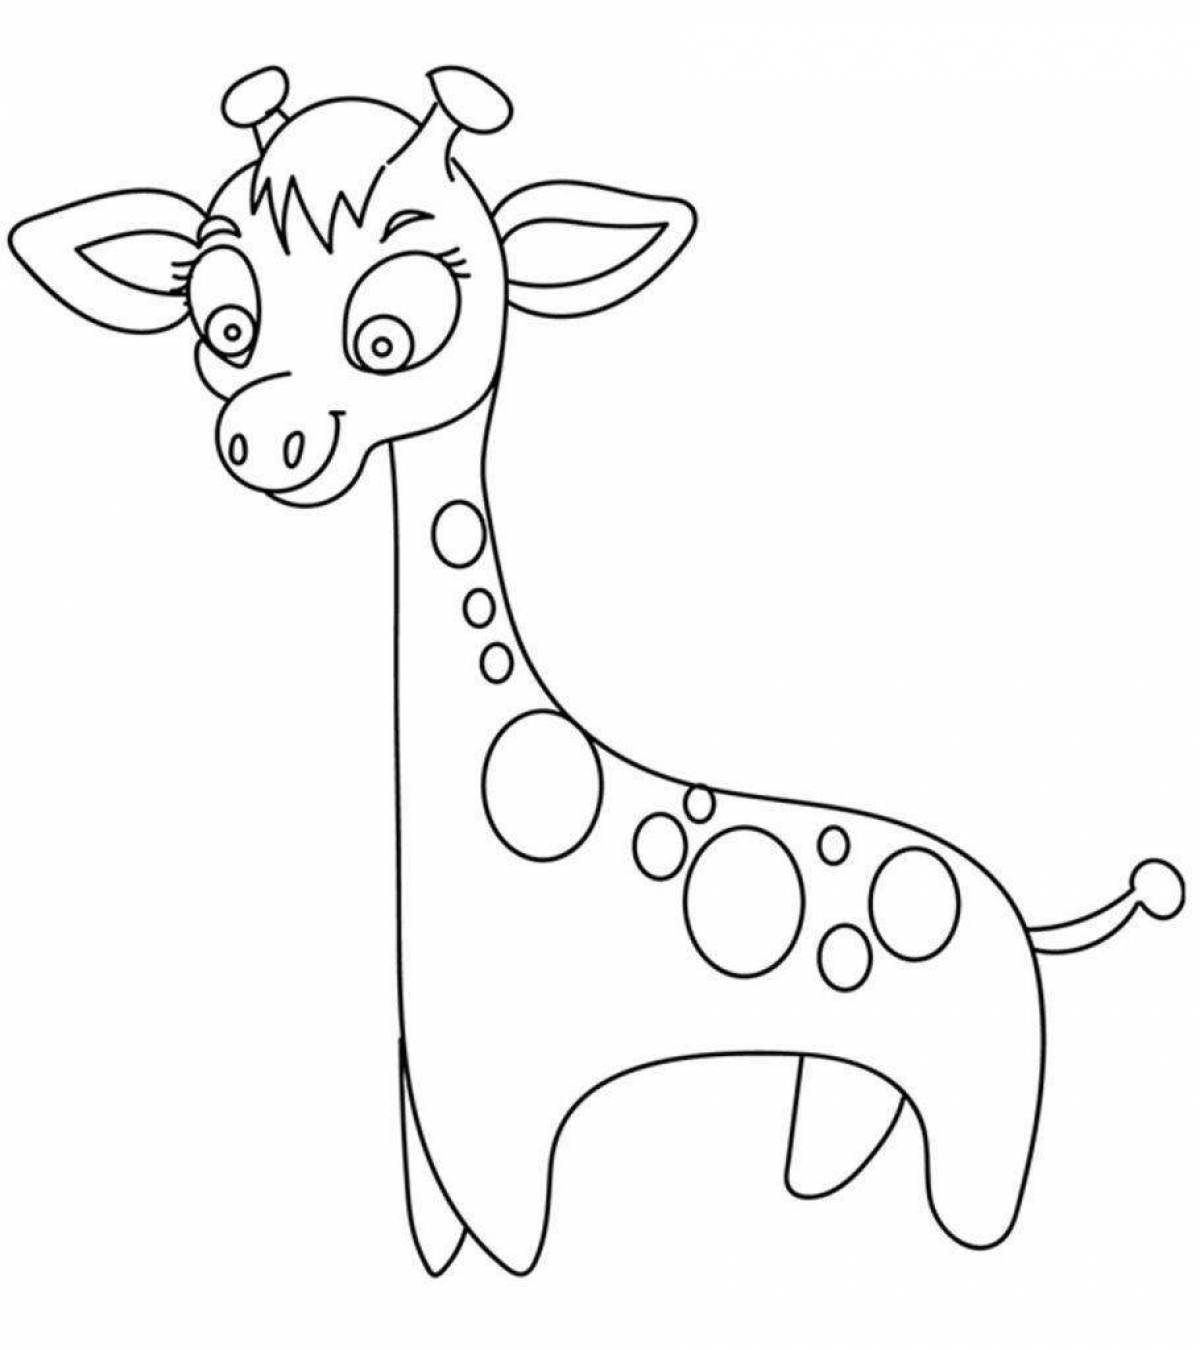 Увлекательная раскраска жирафа для детей 3-4 лет